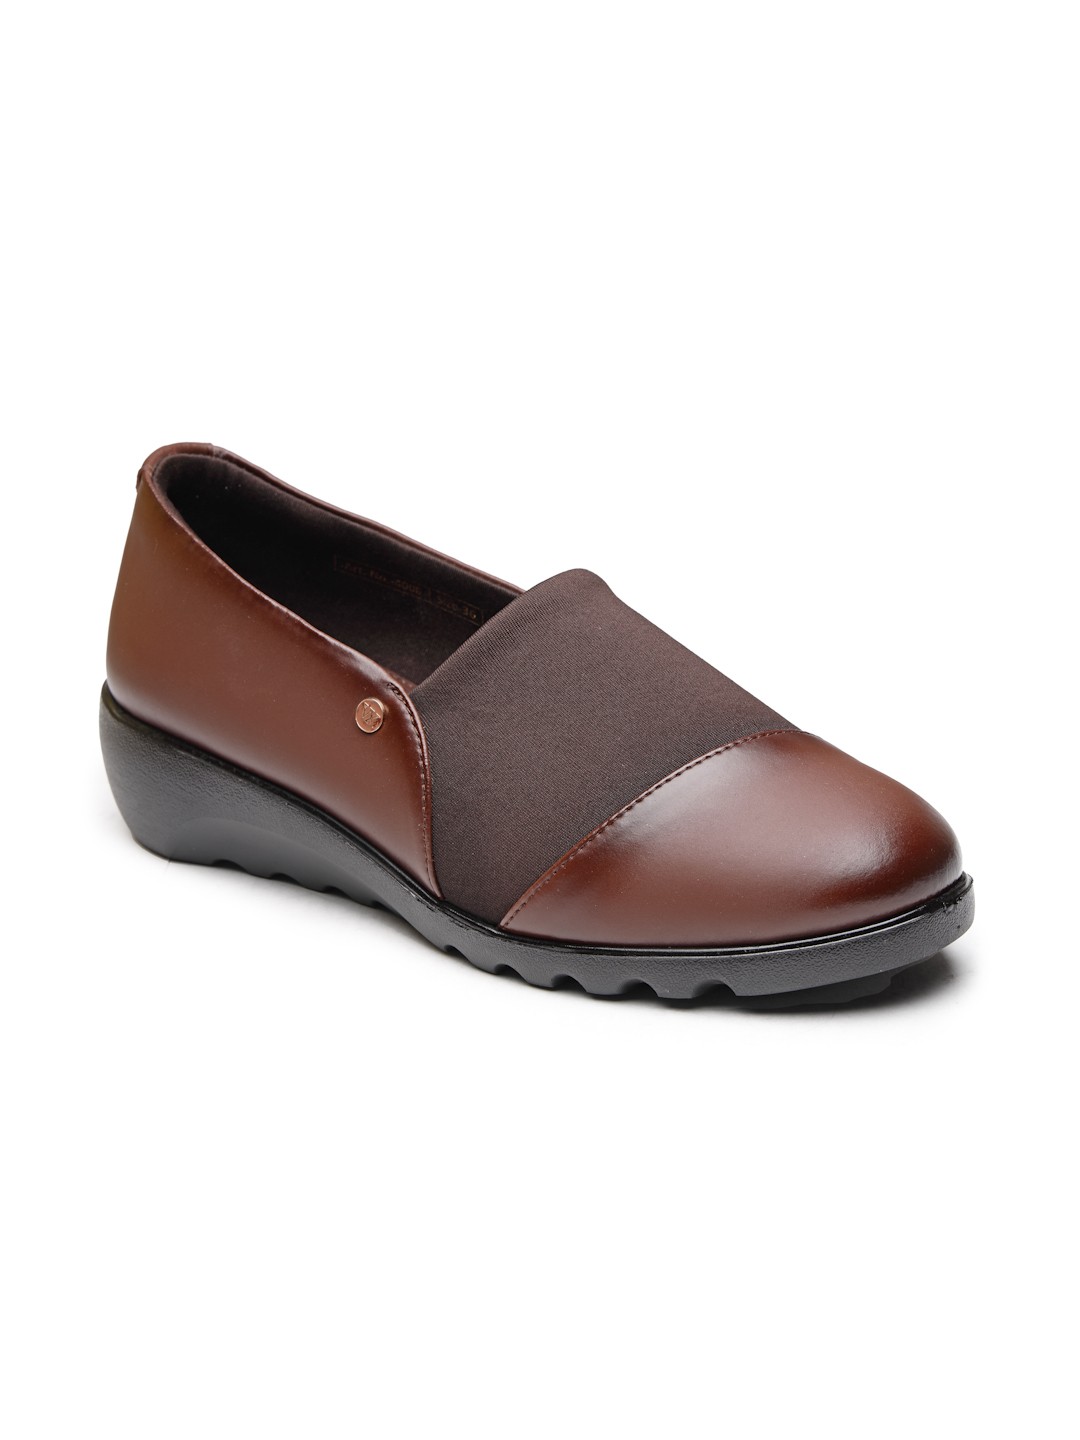 Buy Von Wellx Germany Comfort Women's Brown Casual Shoes Ayla Online in Saudi Arabia